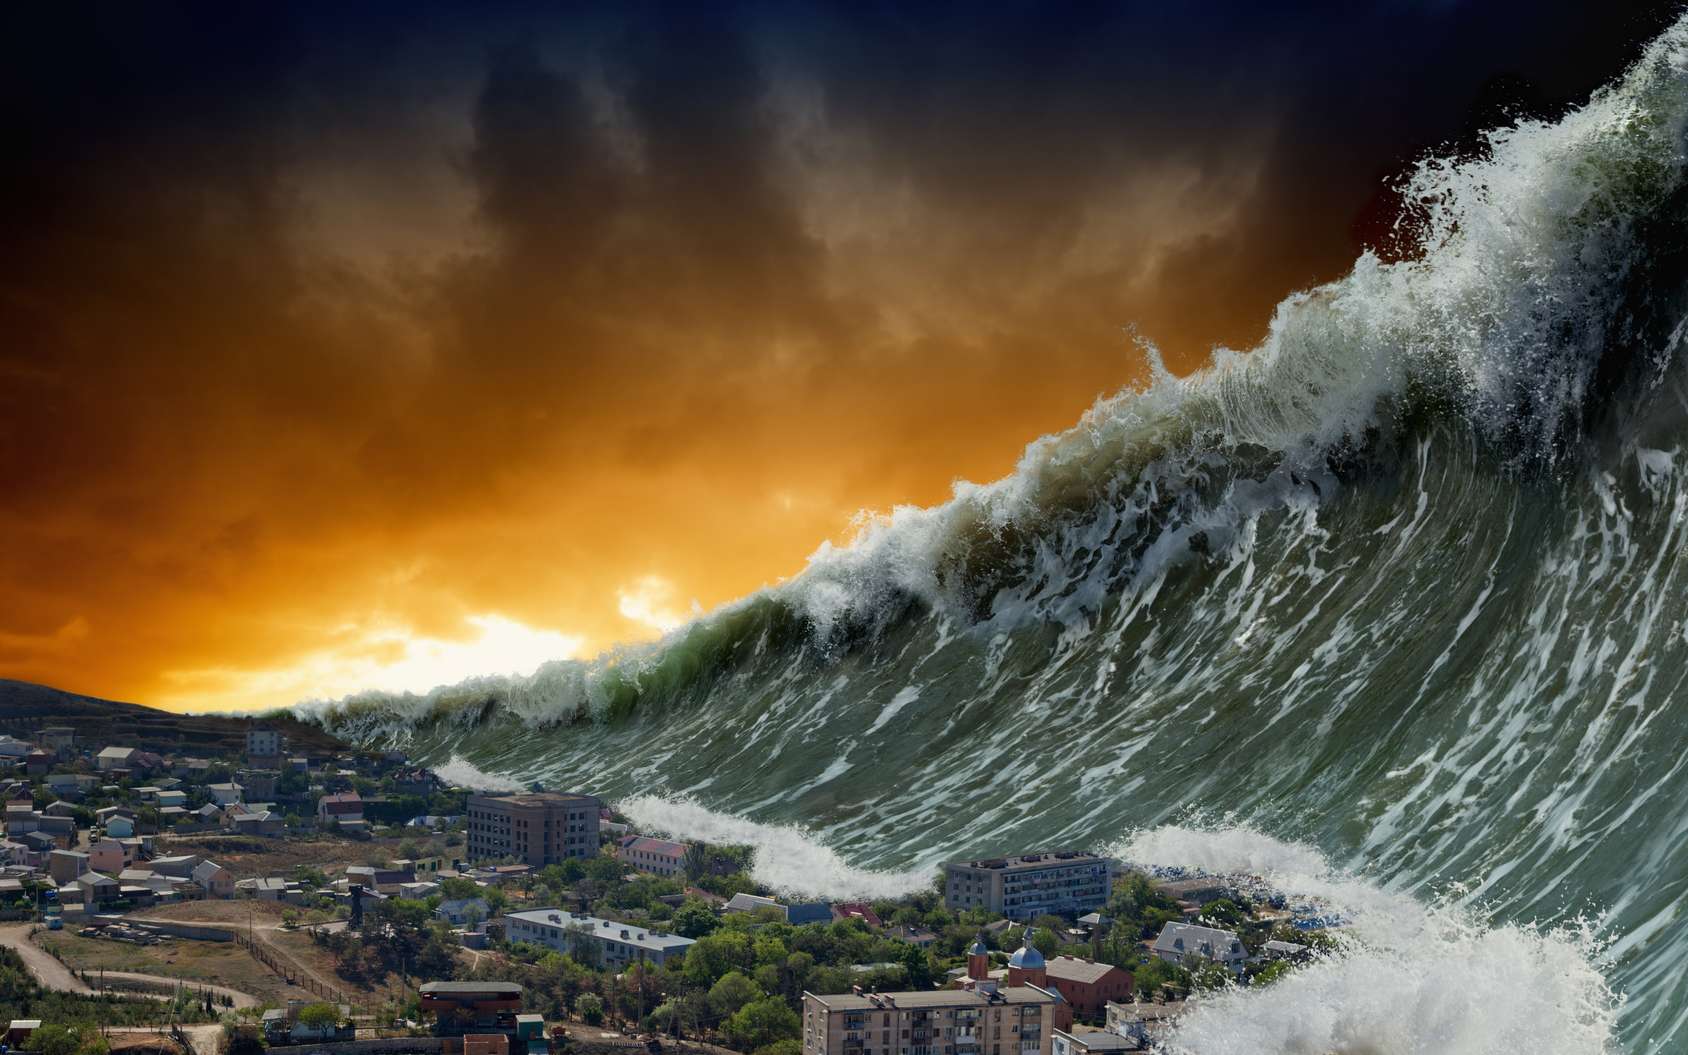 Résultat de recherche d'images pour "imagem de tsunami"